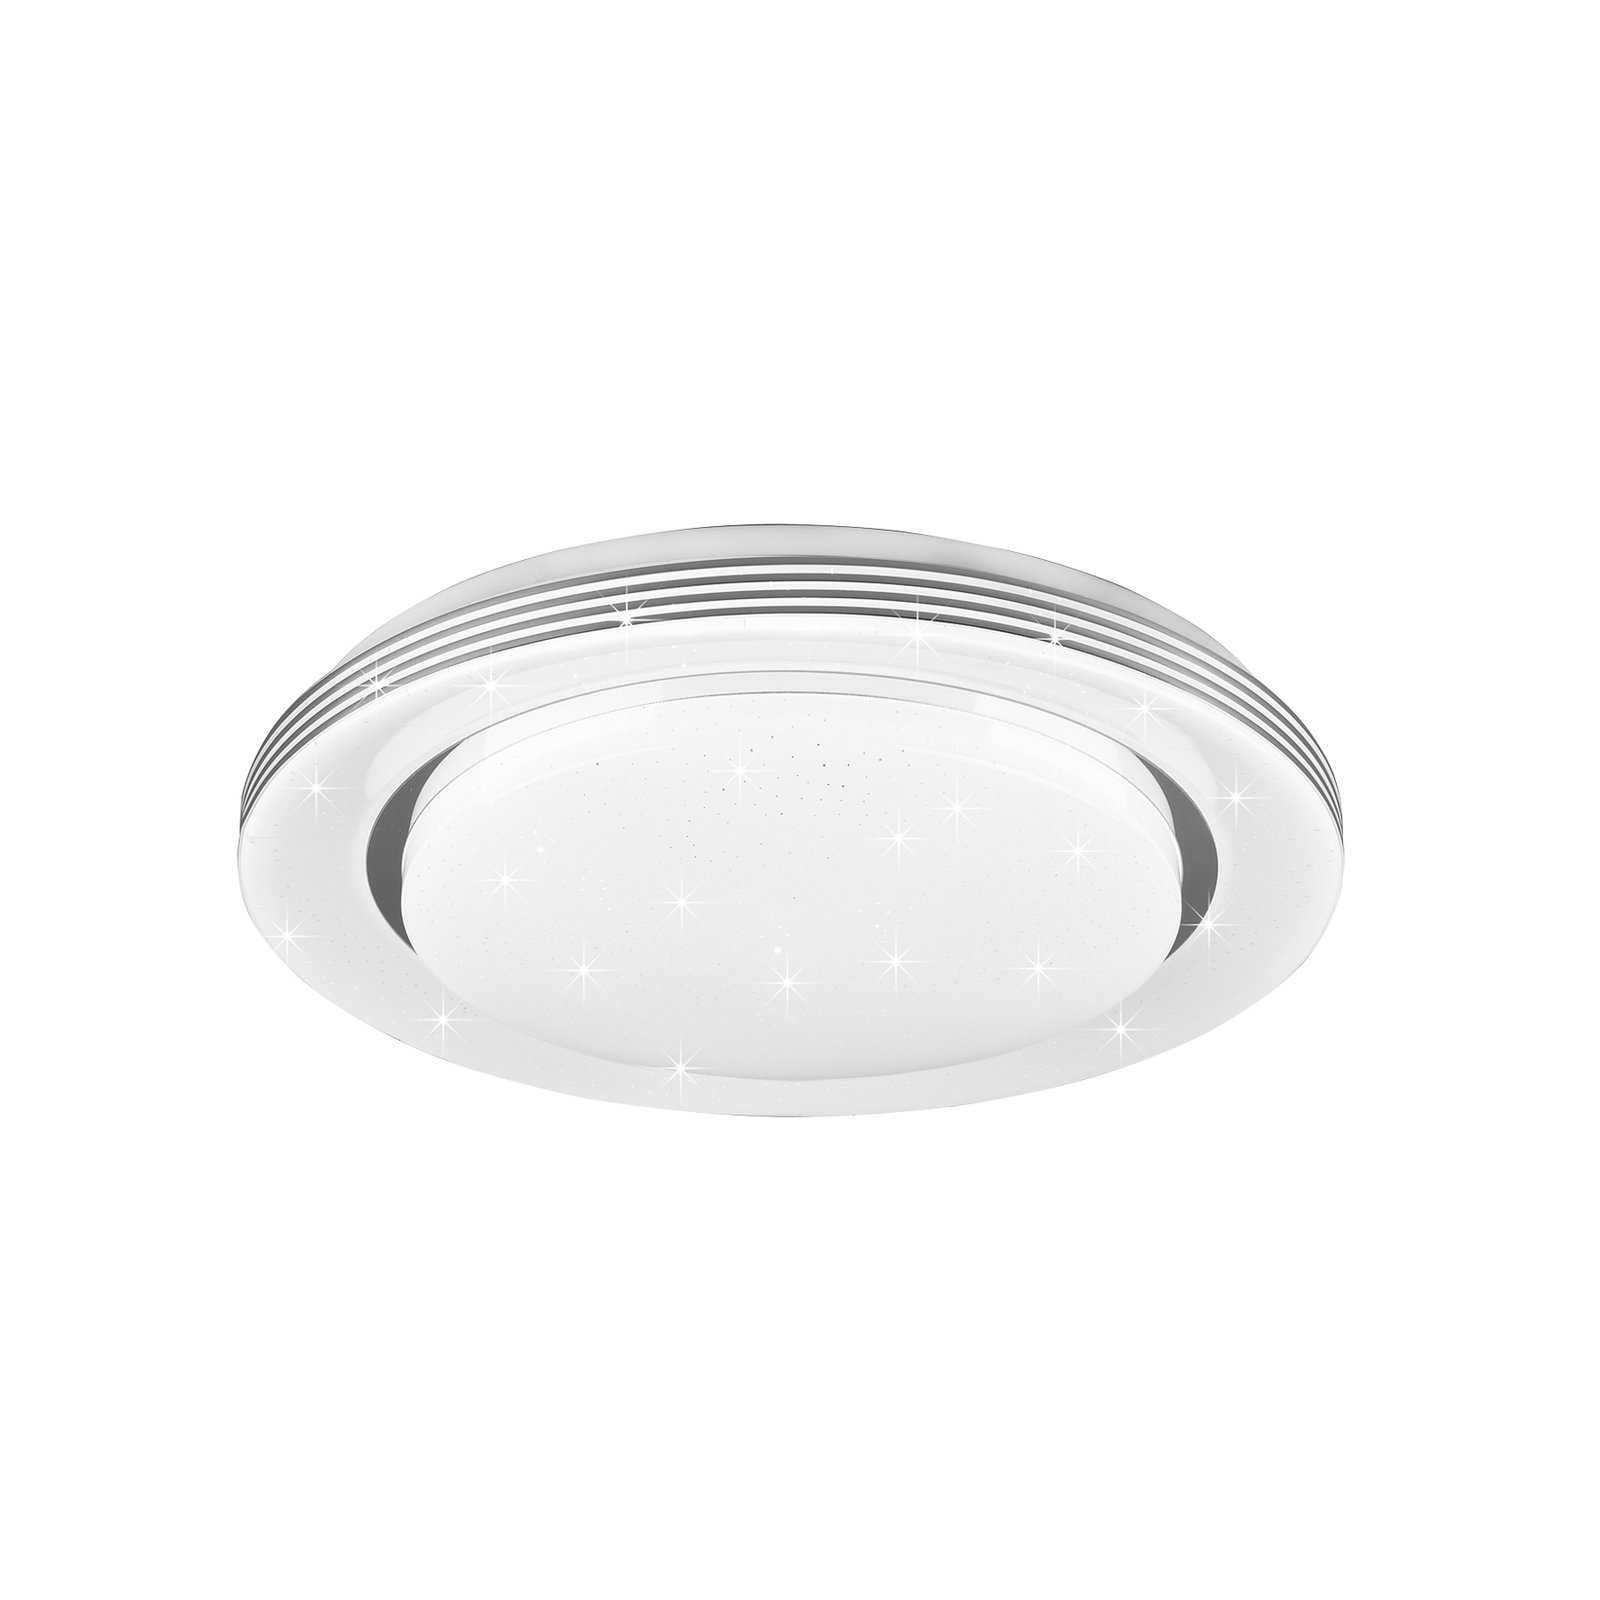 LED ceiling lamp Atria, Ø 38 cm, white, plastic, CCT